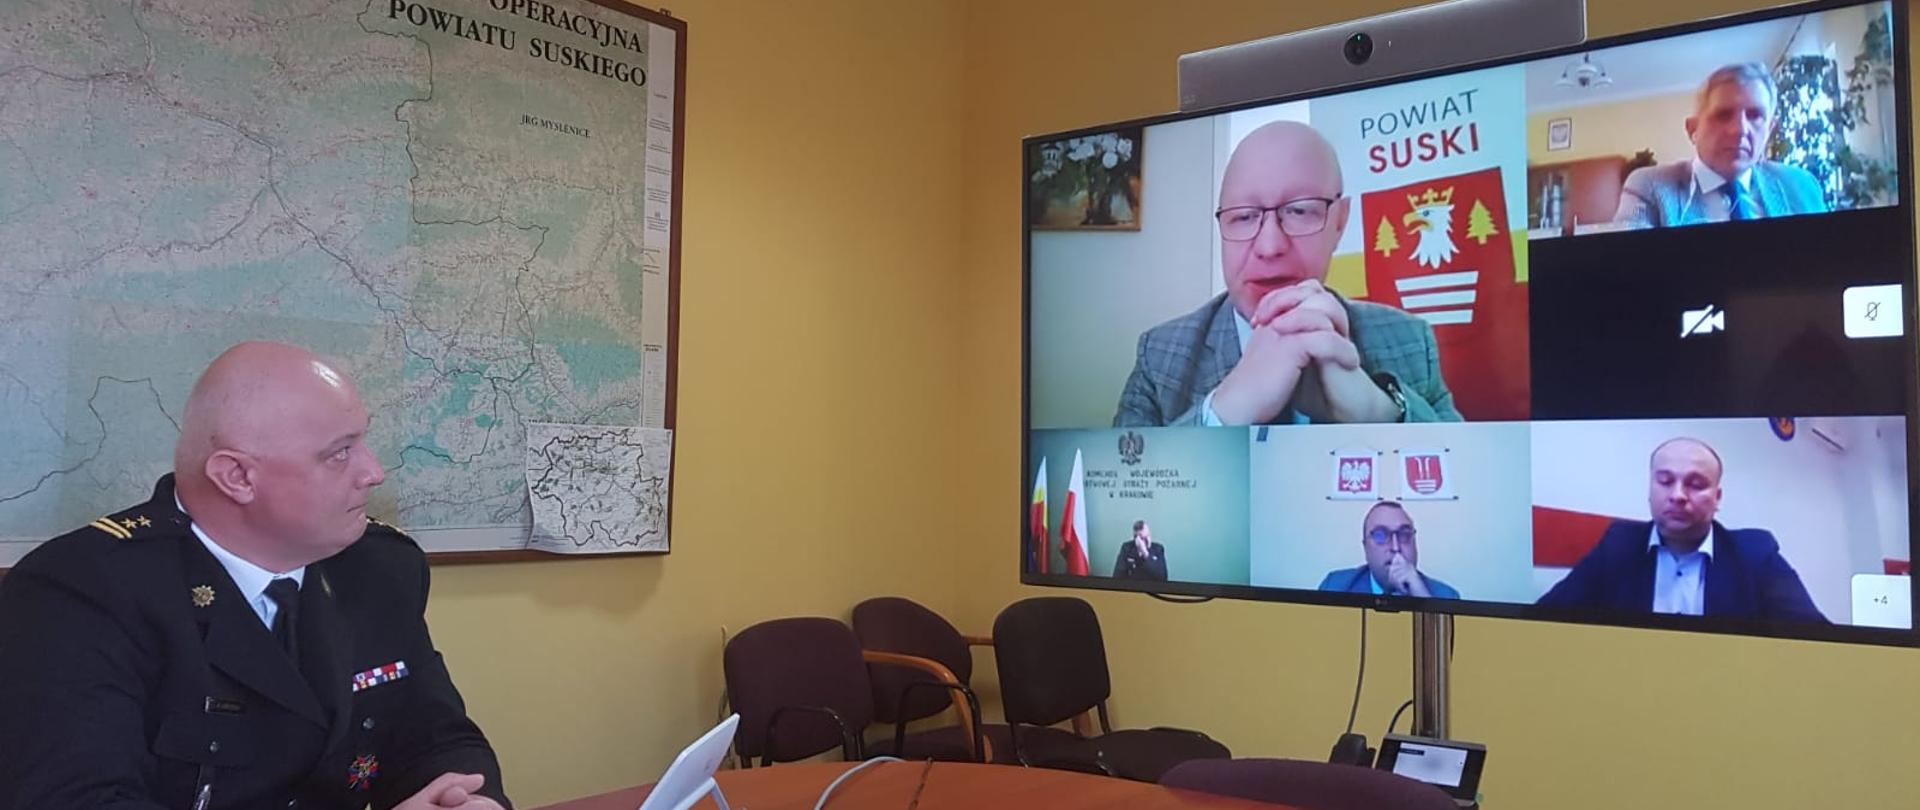 Zdjęcie przedstawia Komendanta Powiatowego PSP w Suchej Beskidzkiej. Z prawej strony znajduje się telewizor, a na min wyświetlane są osoby biorące udział w wideokonferencji. 